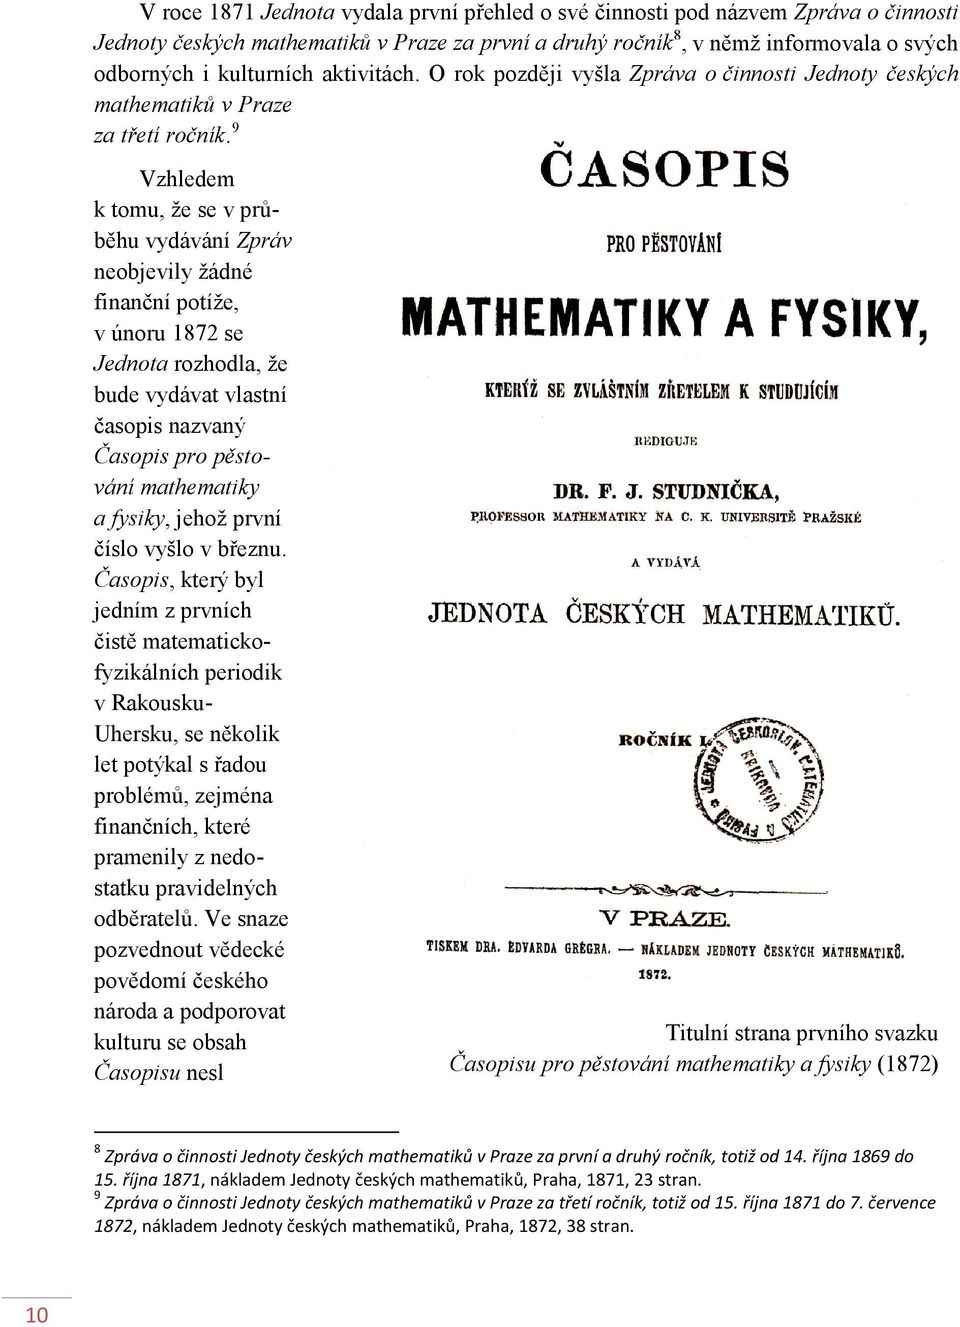 9 Vzhledem k tomu, že se v průběhu vydávání Zpráv neobjevily žádné finanční potíže, v únoru 1872 se Jednota rozhodla, že bude vydávat vlastní časopis nazvaný Časopis pro pěstování mathematiky a